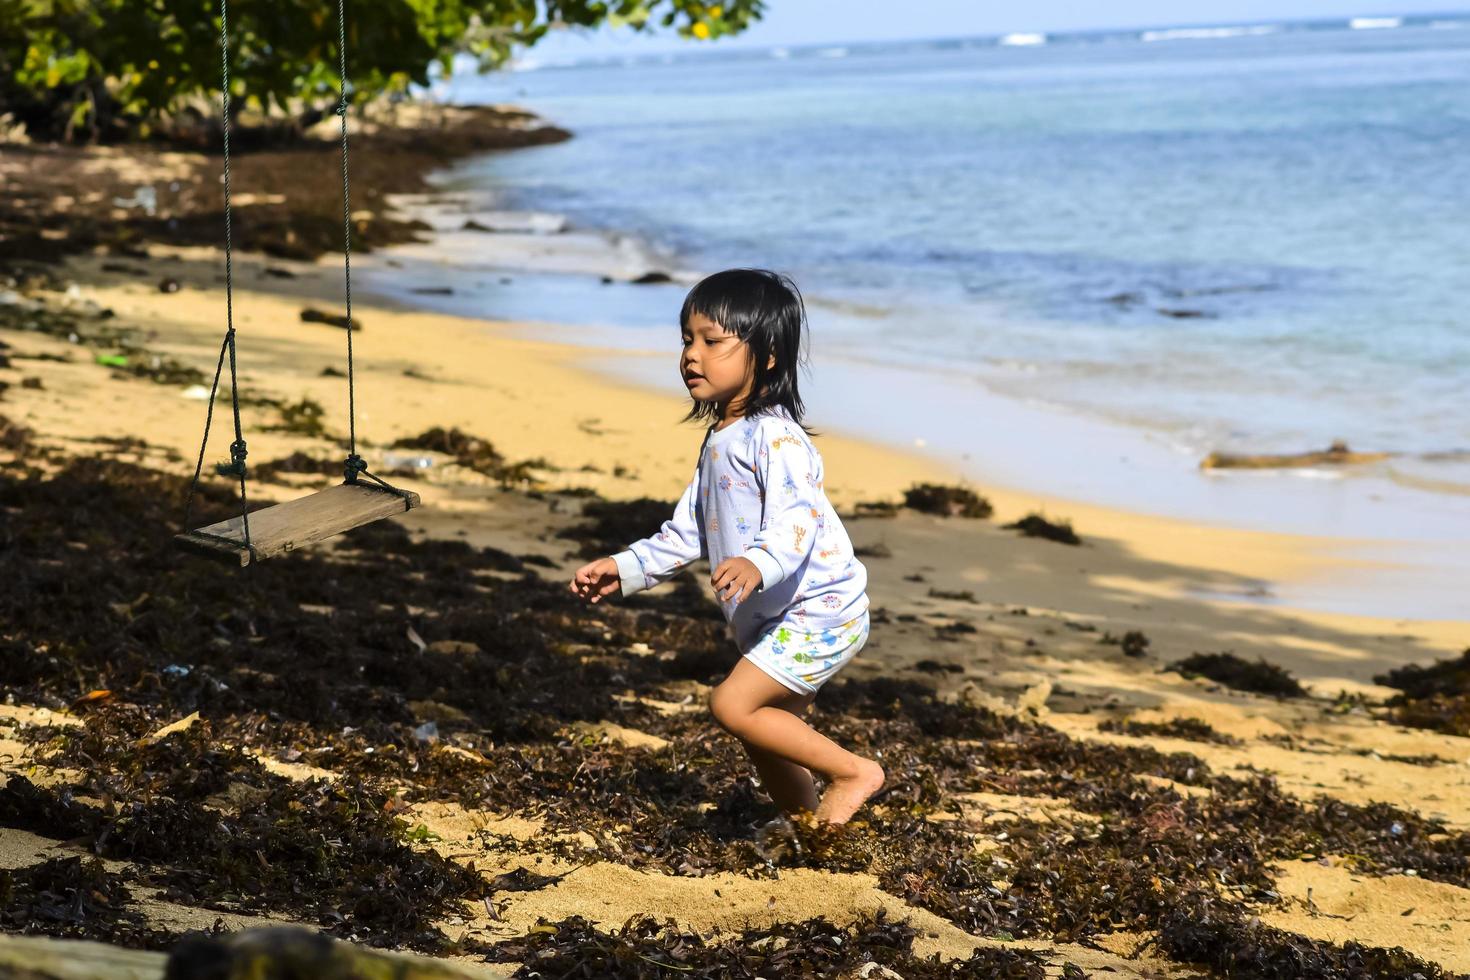 Une petite fille jouant sur une balançoire au bord de la plage photo